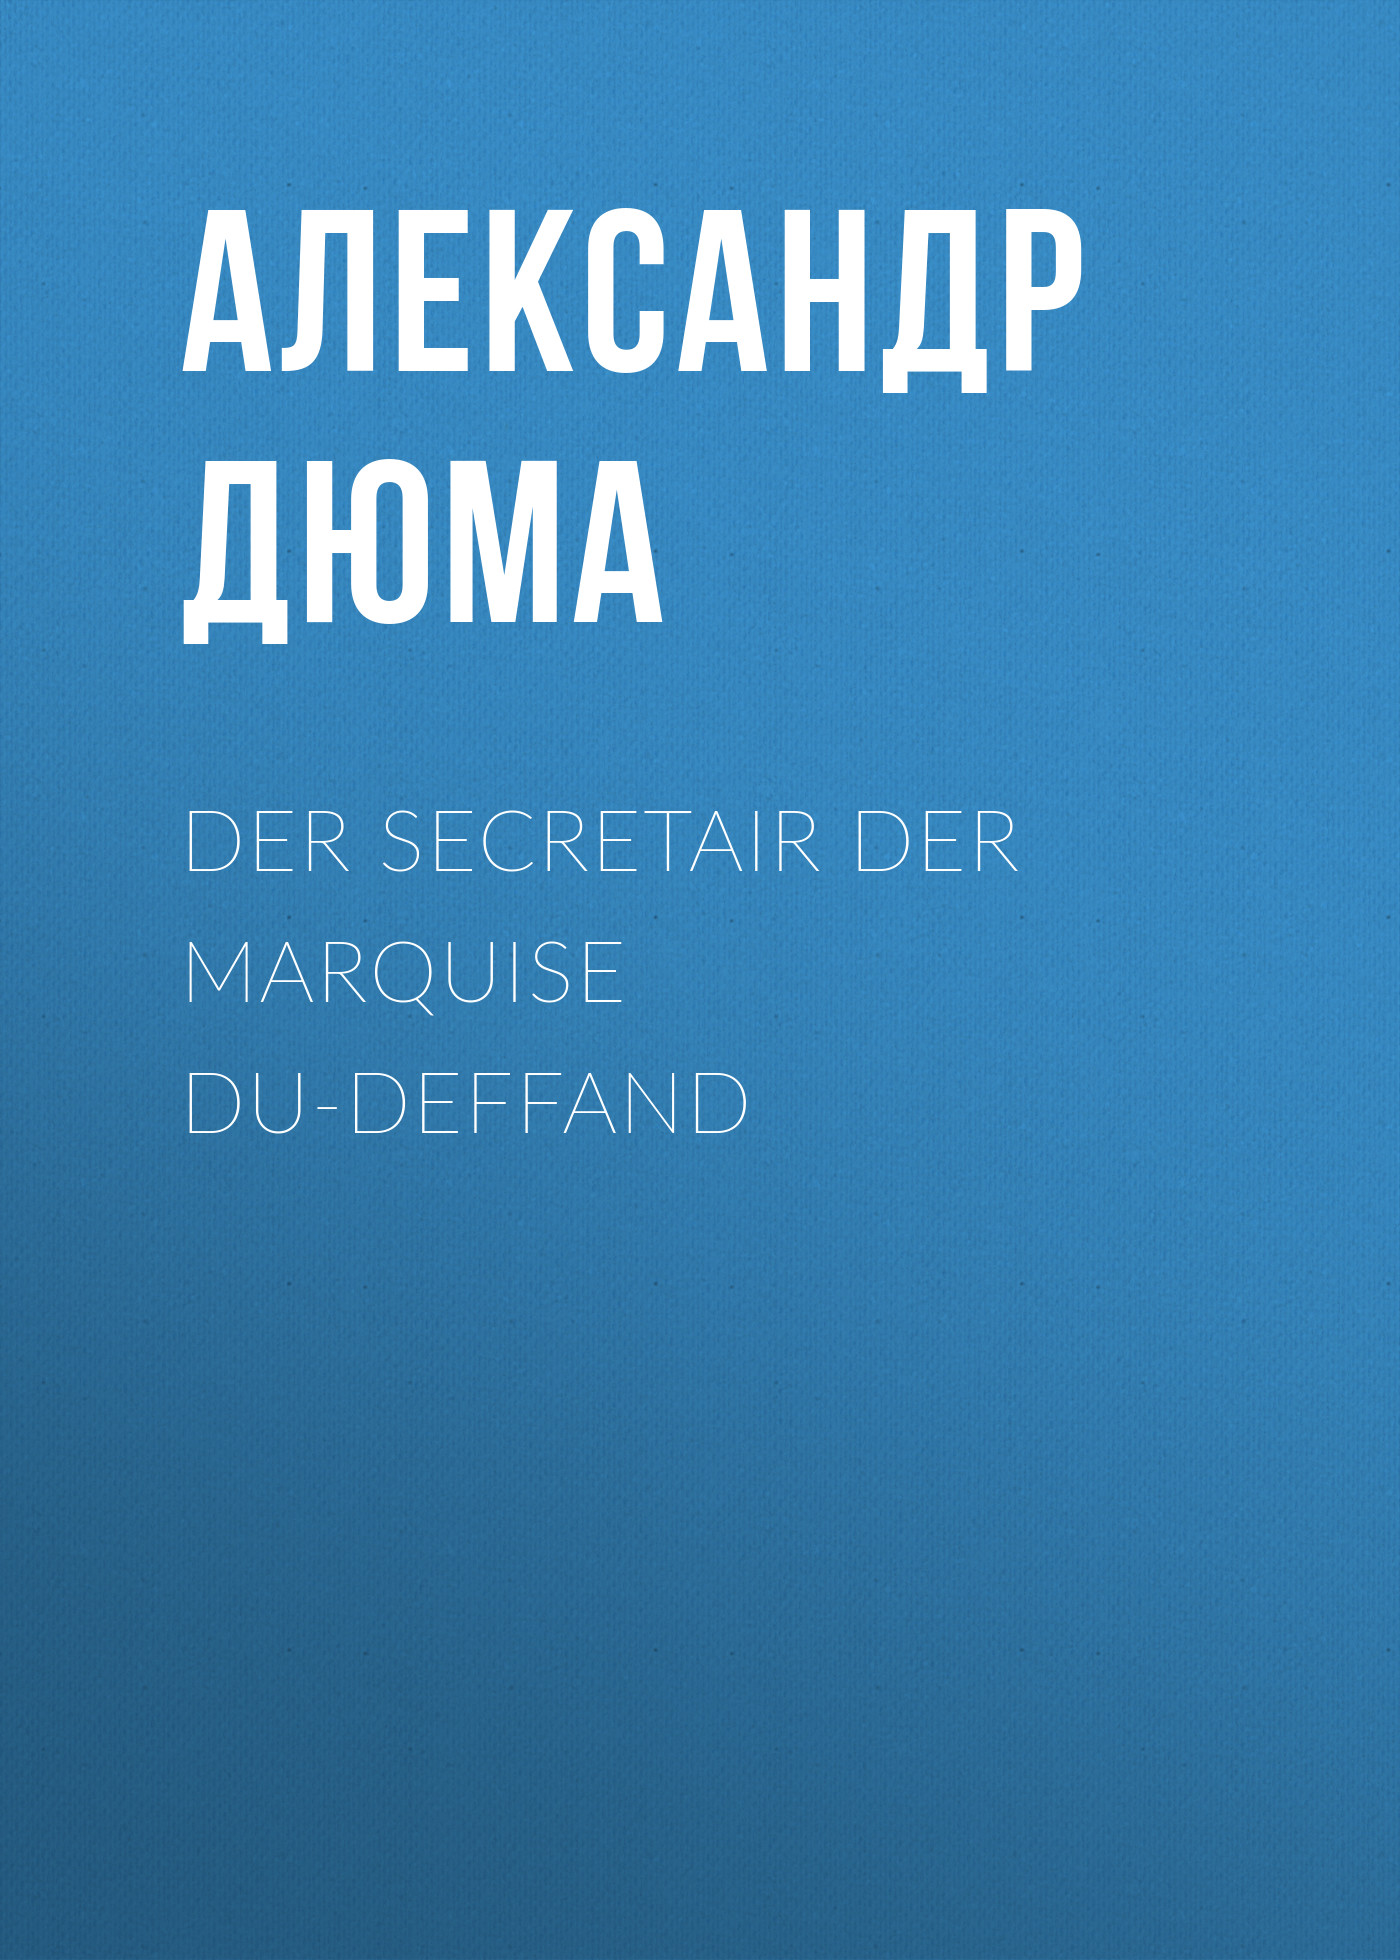 Книга Der Secretair der Marquise Du-Deffand из серии , созданная Alexandre Dumas der Ältere, может относится к жанру Зарубежная классика. Стоимость электронной книги Der Secretair der Marquise Du-Deffand с идентификатором 48632508 составляет 0 руб.